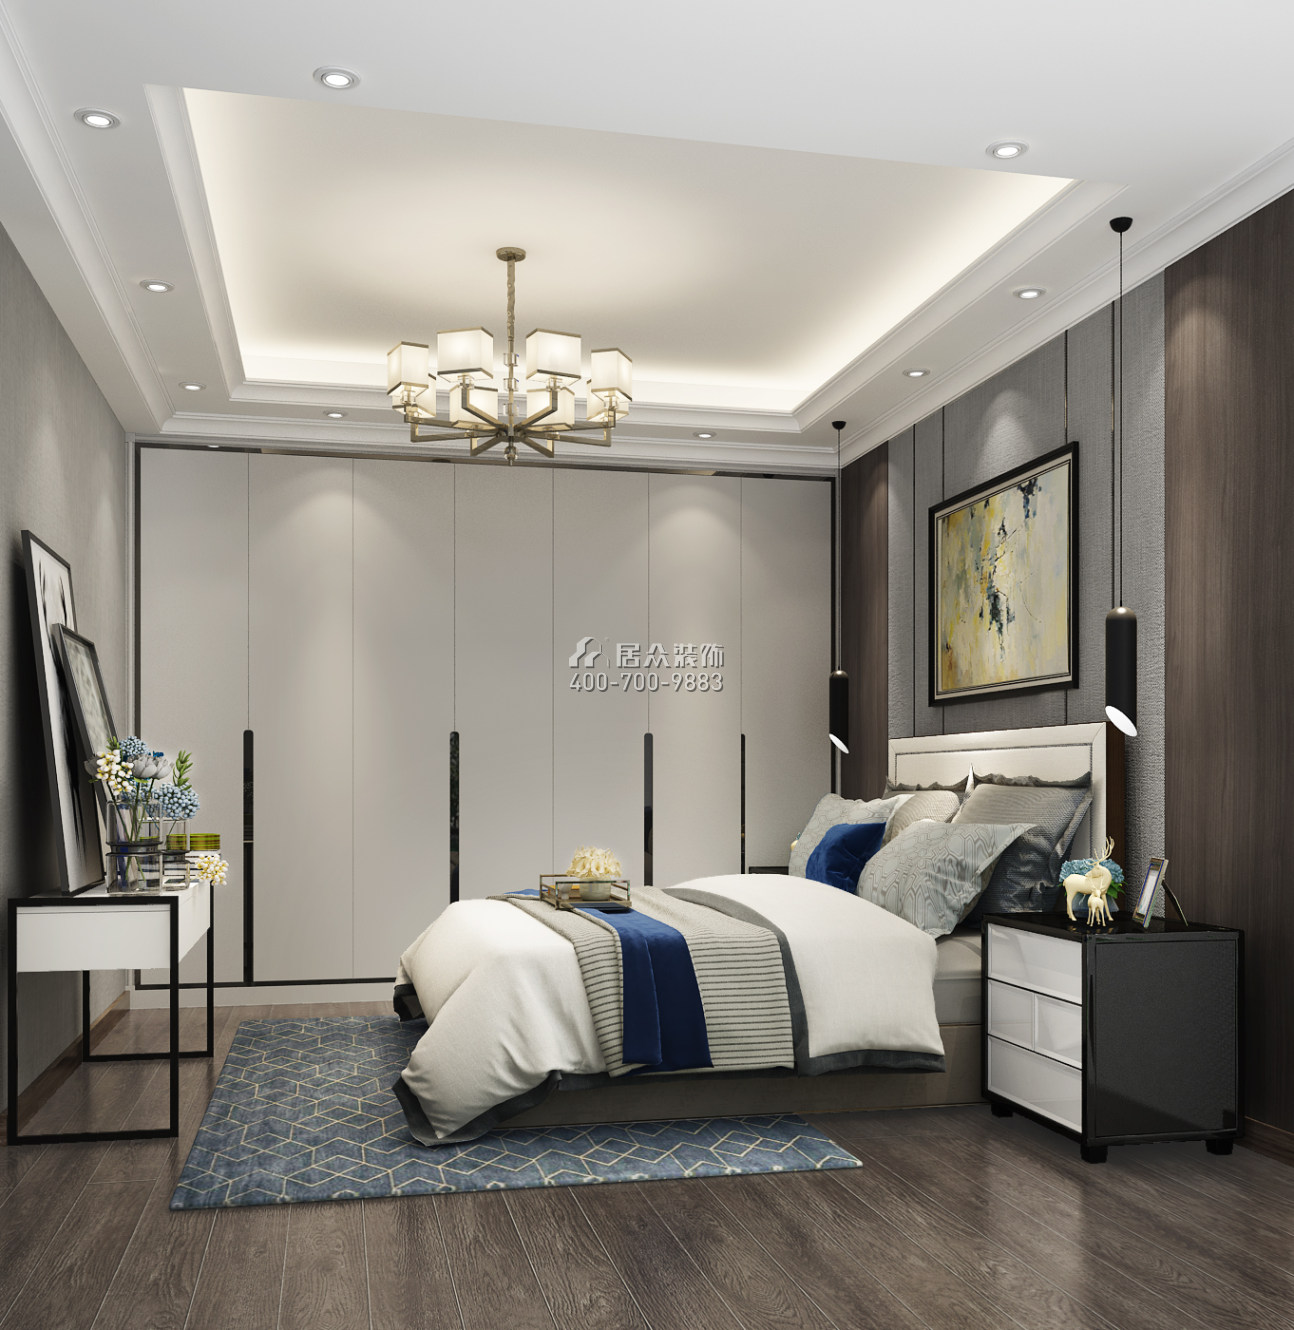 郁金香家园150平方米现代简约风格平层户型卧室装修效果图